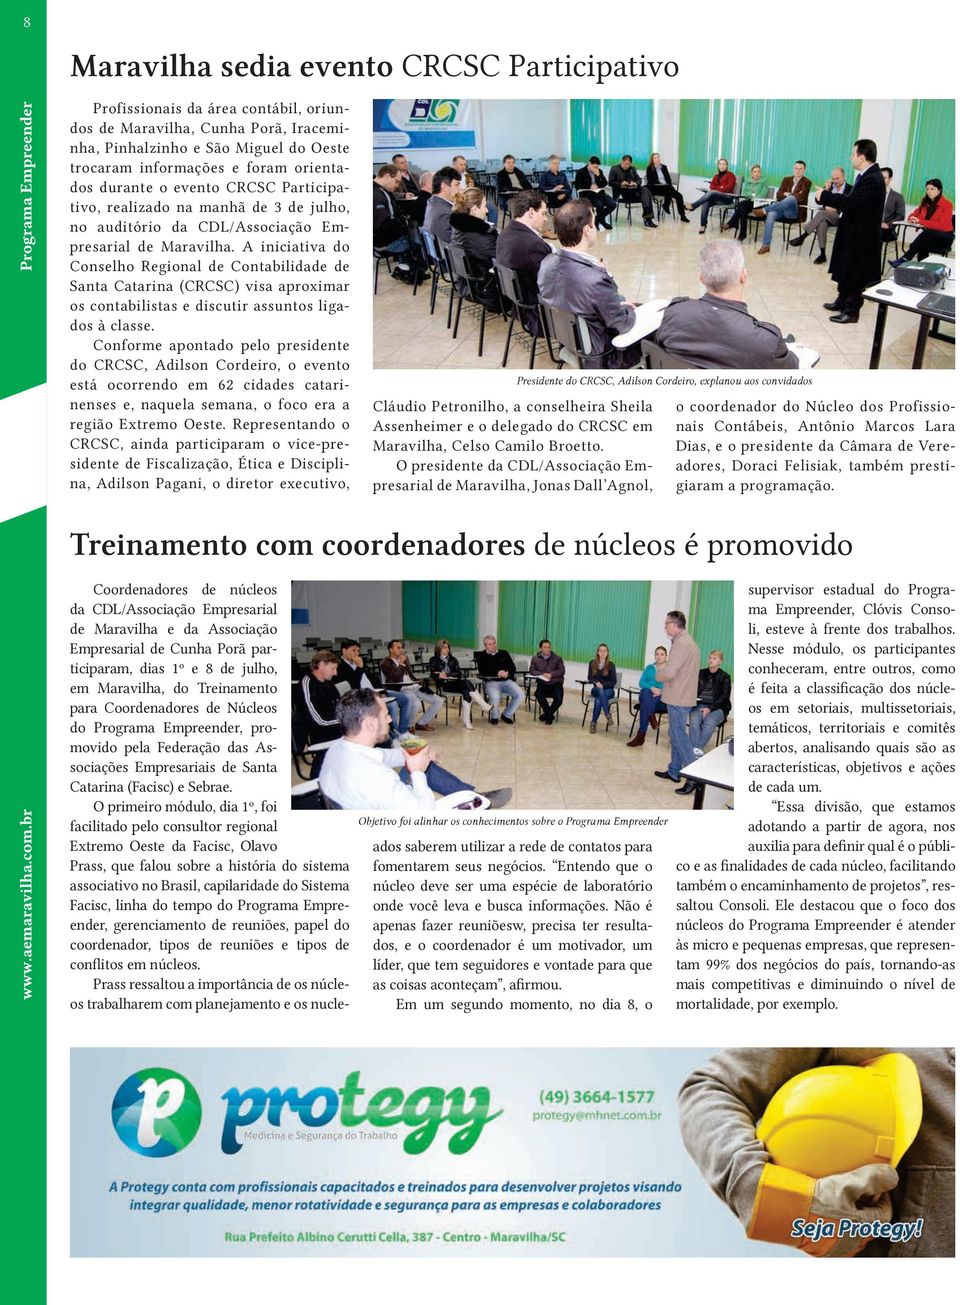 A iniciativa do Conselho Regional de Contabilidade de Santa Catarina (CRCSC) visa aproximar os contabilistas e discutir assuntos ligados à classe.